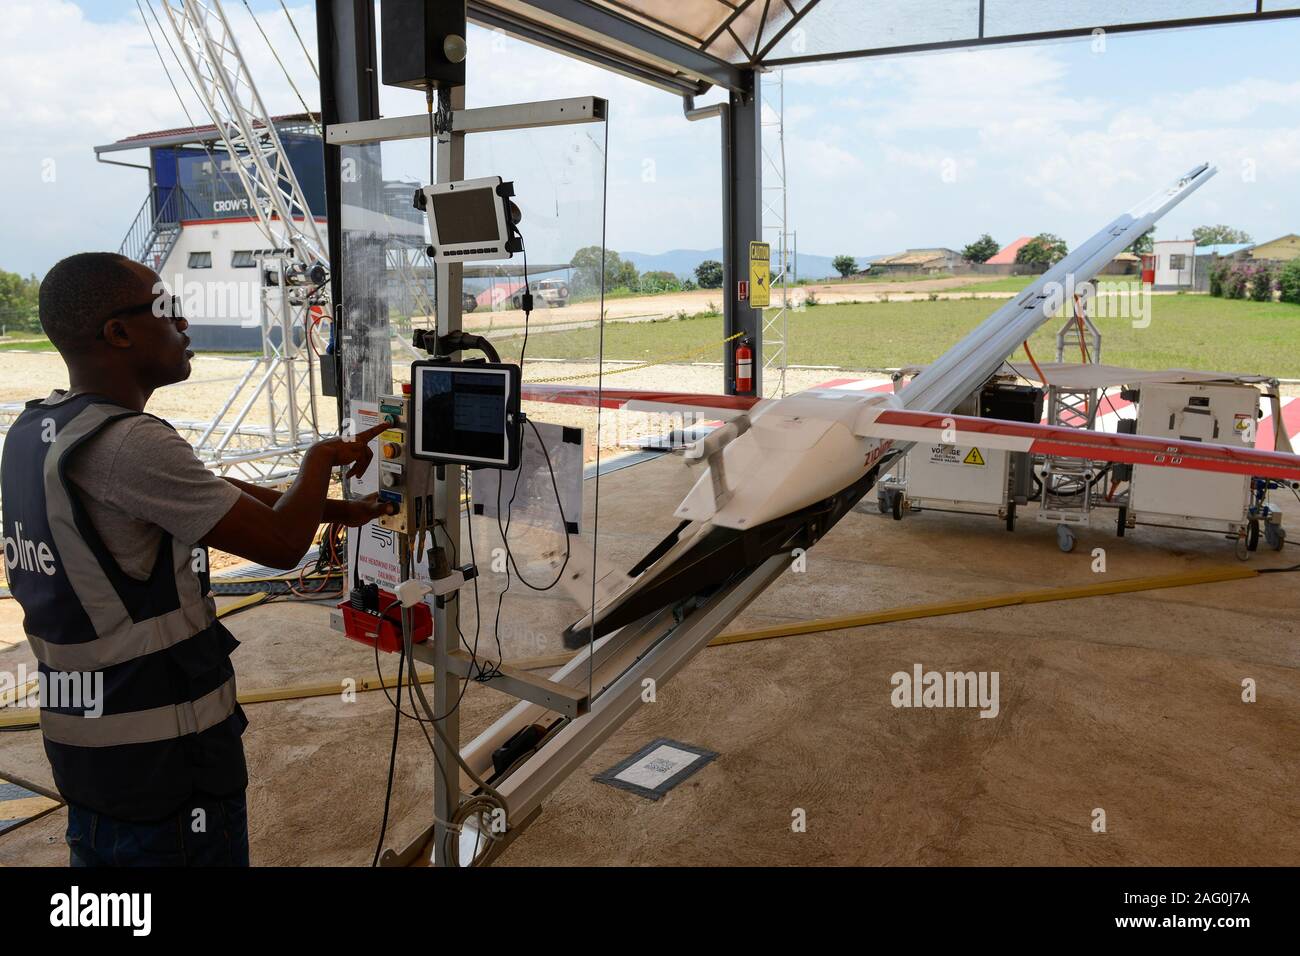 Ruanda, Gitarama, Muhanga, zipline drone Flughafen, zipline ist eine amerikanische Start-up und liefert Blut bewahren und Medikamente mit Batterie Drohne zu ländlichen Gesundheitszentren, die Batterie betriebene Plz 2 können bei einer Höchstgeschwindigkeit rund 79 Meilen pro Stunde fahren, Durchführung von 3,85 Pfund von Ladung und hat eine Reichweite von 160 km Hin- und Rückfahrt, die Lieferung wird durch einen kleinen Fallschirm abgeworfen, Rampe Stockfoto